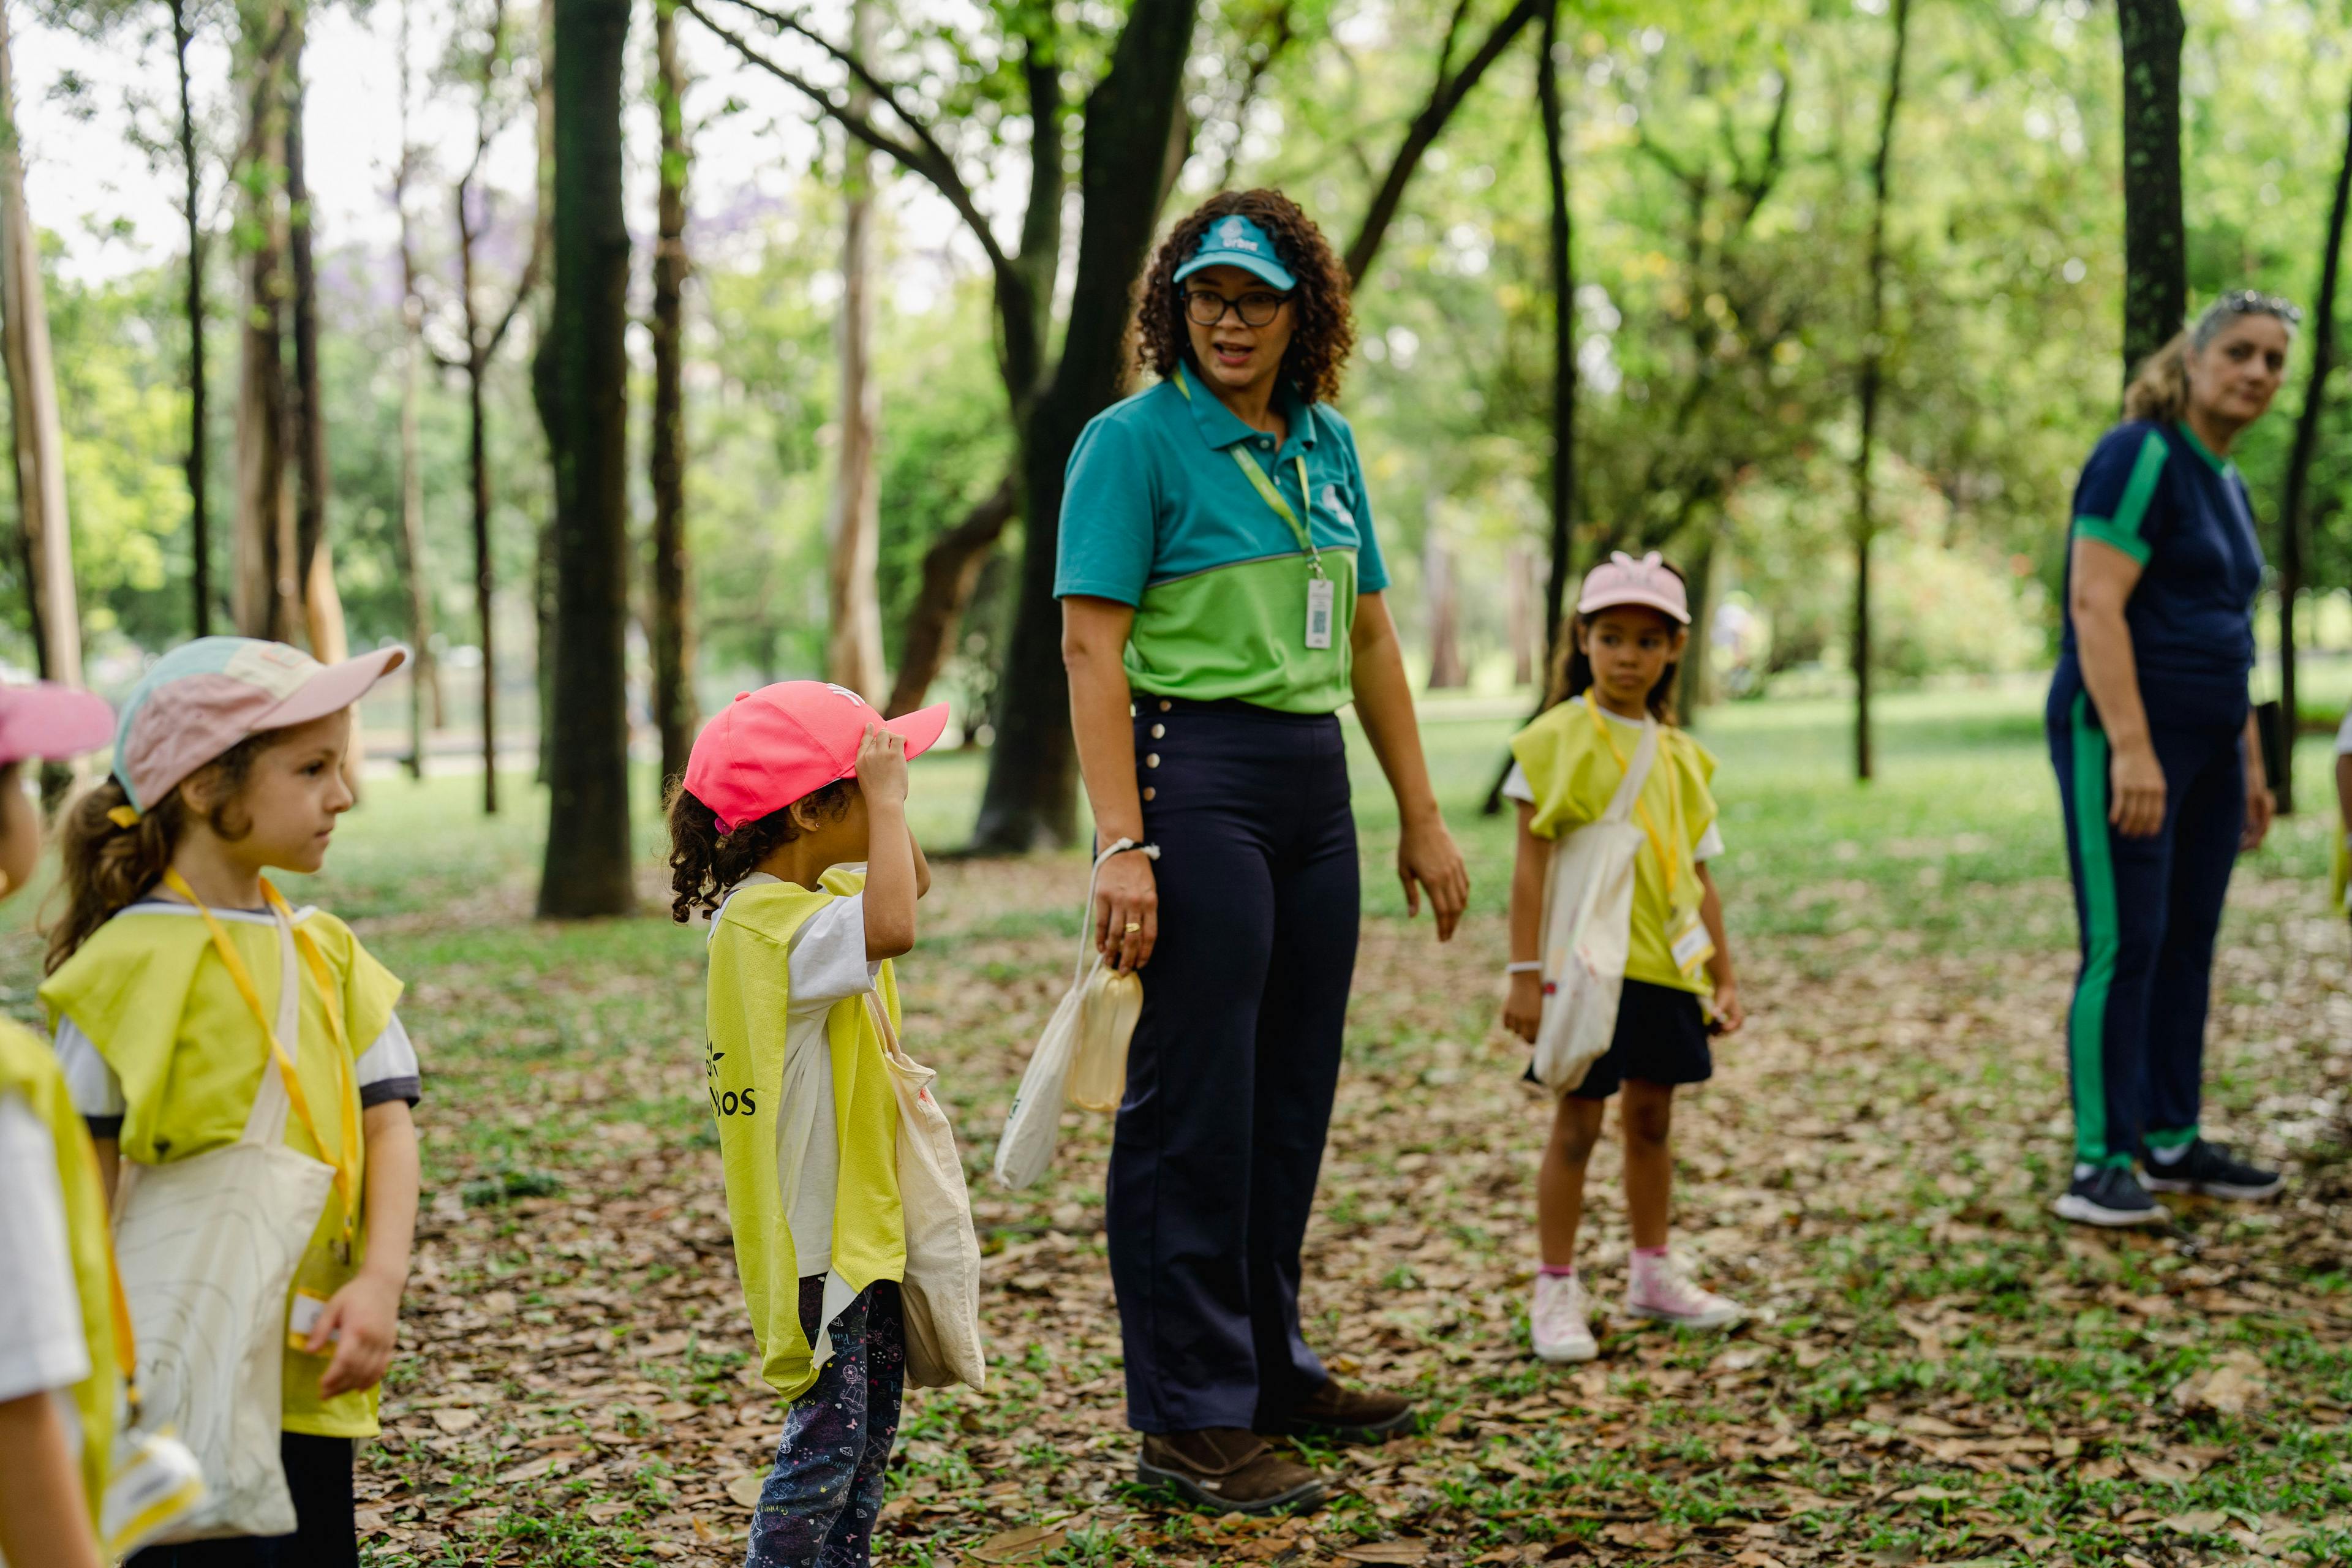 Programa Escola no Parque proporciona conexão com a natureza e educação sustentável